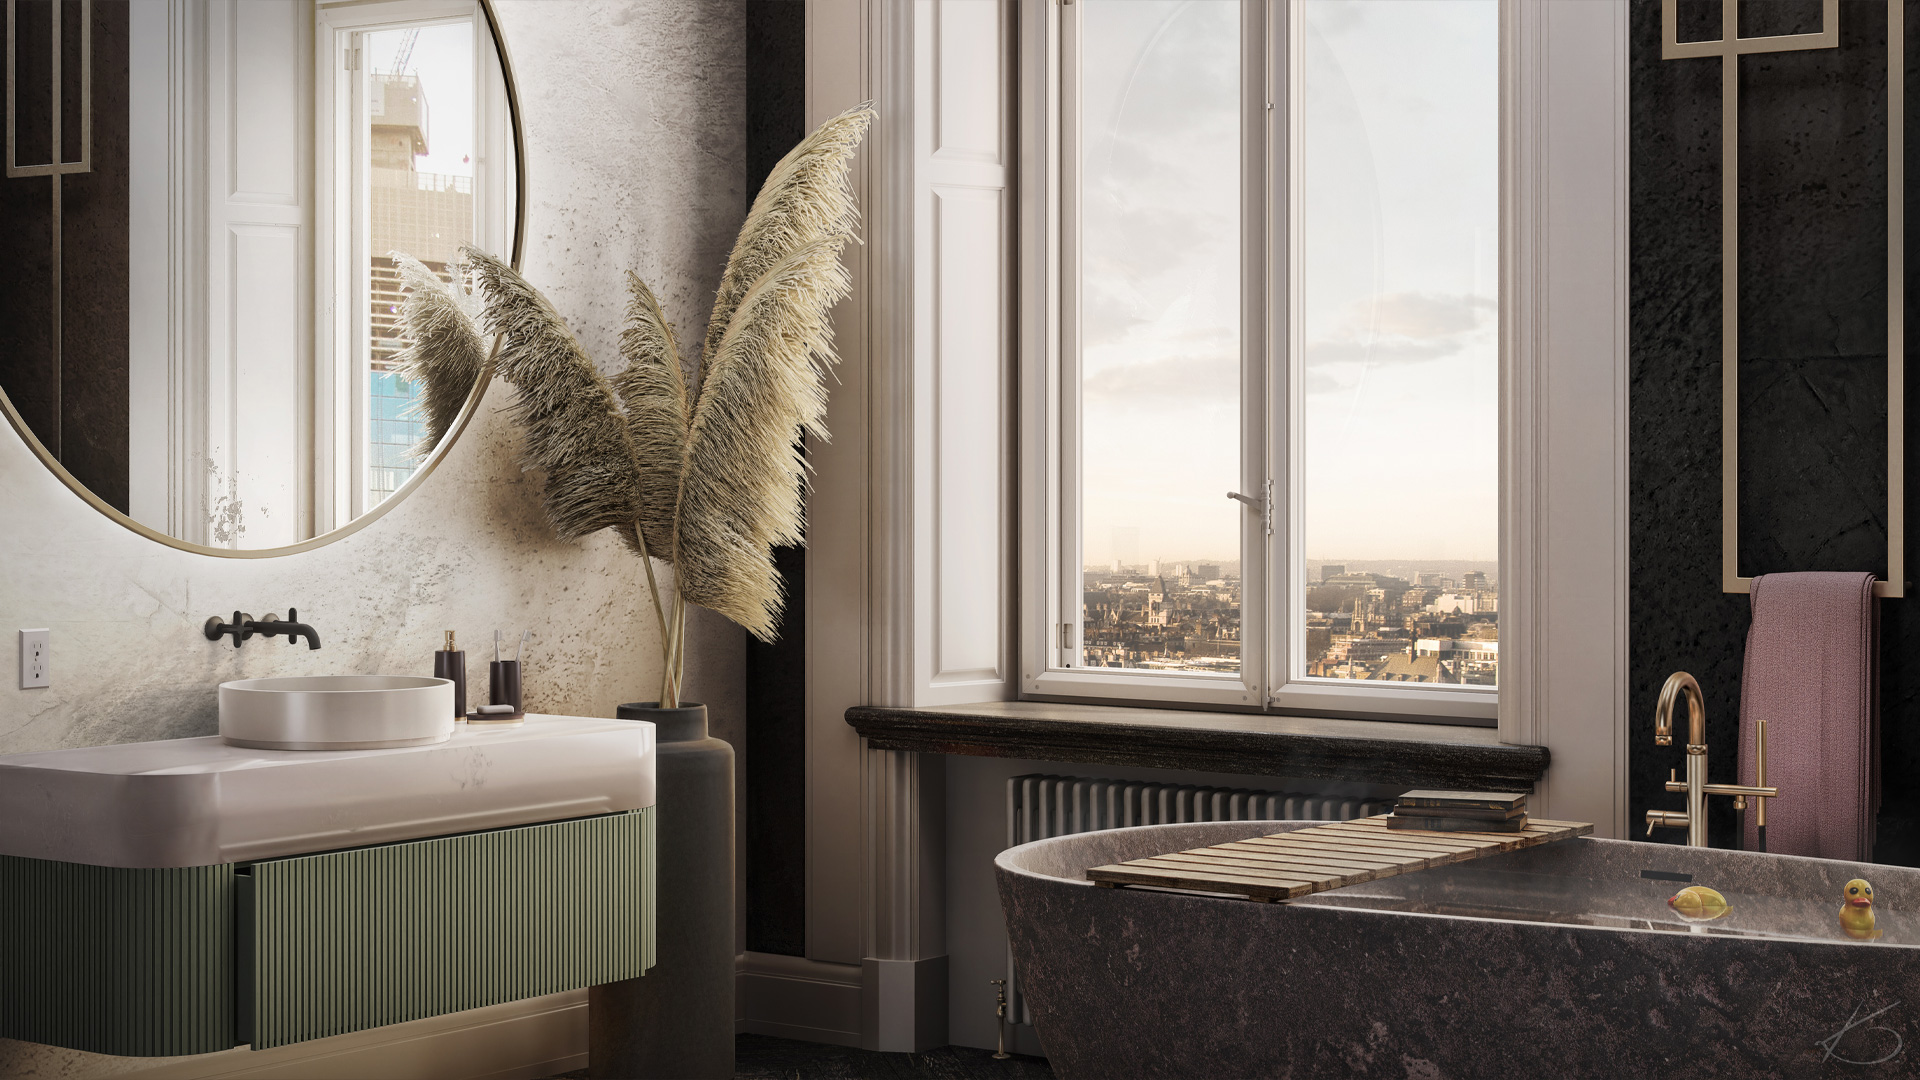 Rénovation en home stagin virtuel d'une salle de bain 3d avec zoom sur le coin vanité